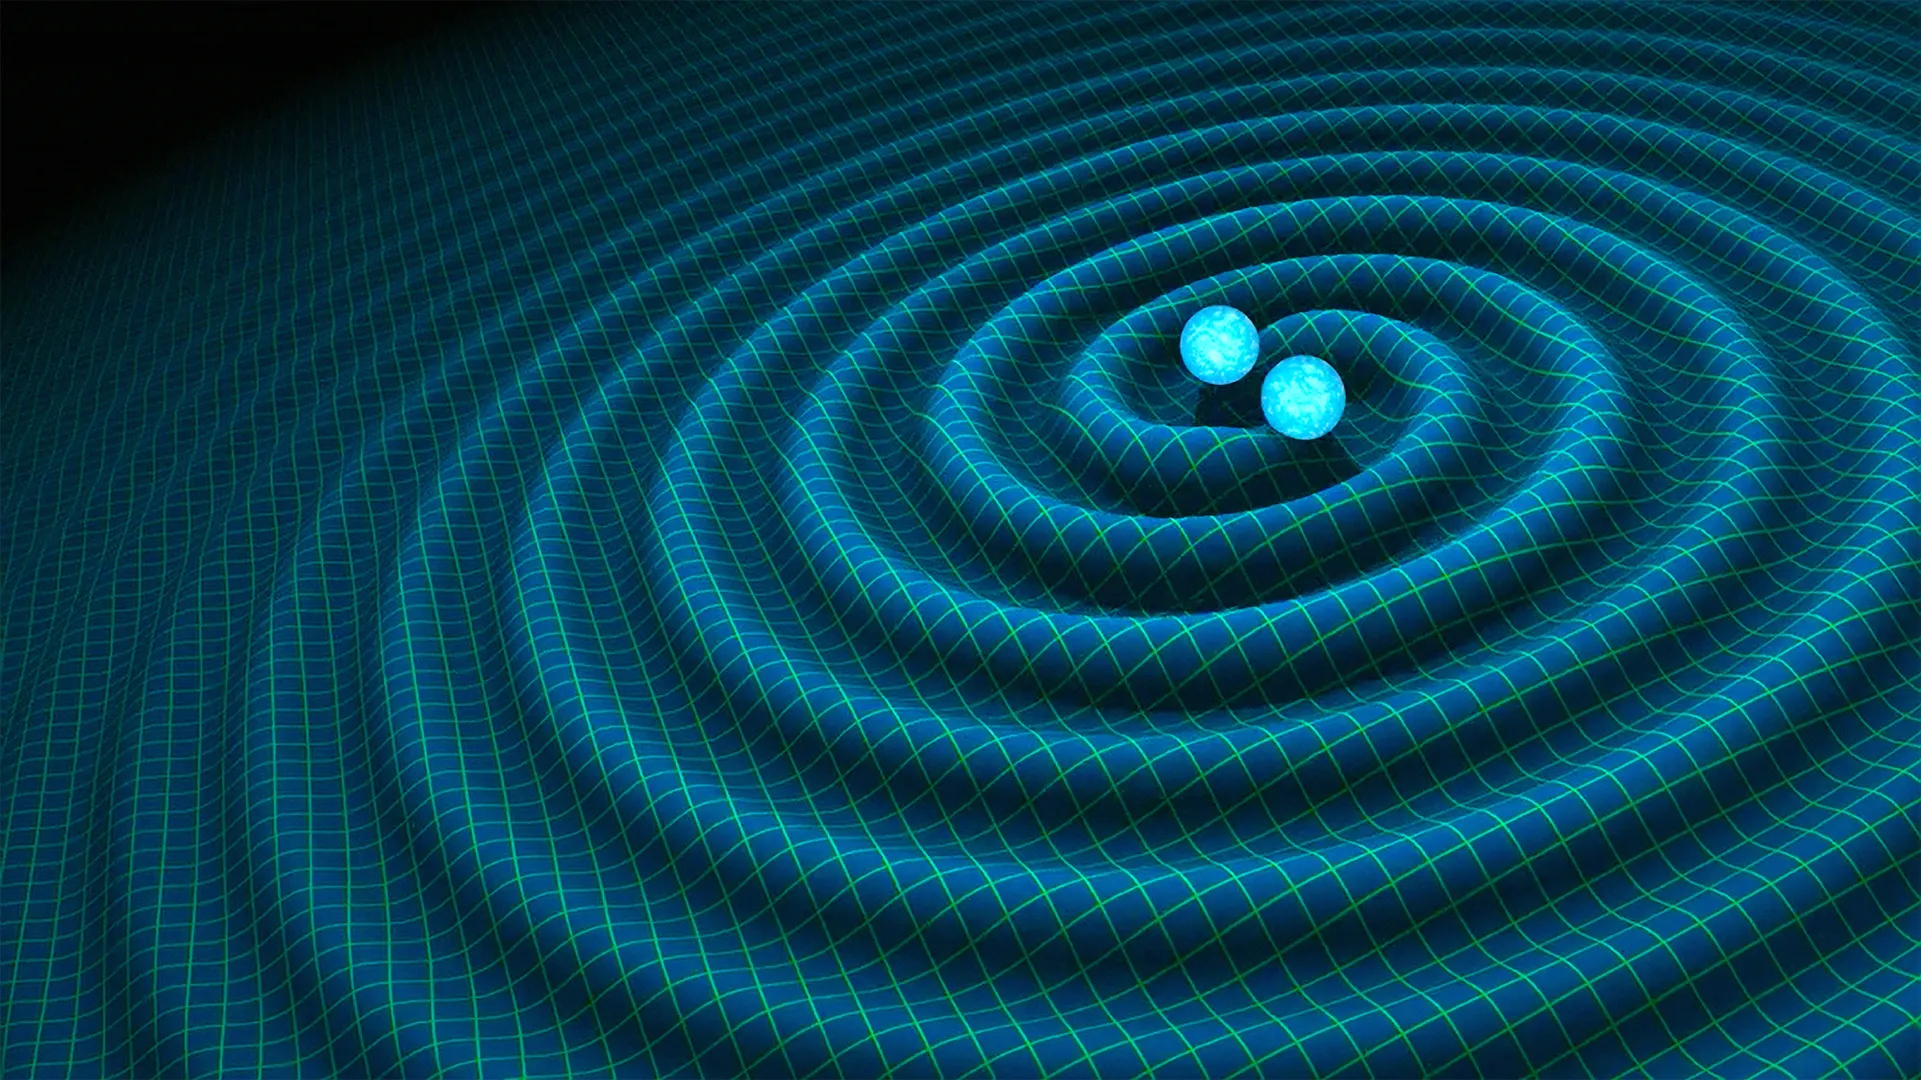 LIGO gravitational wave detector breaks ‘quantum limit’ to find deep universe black hole collisions Space